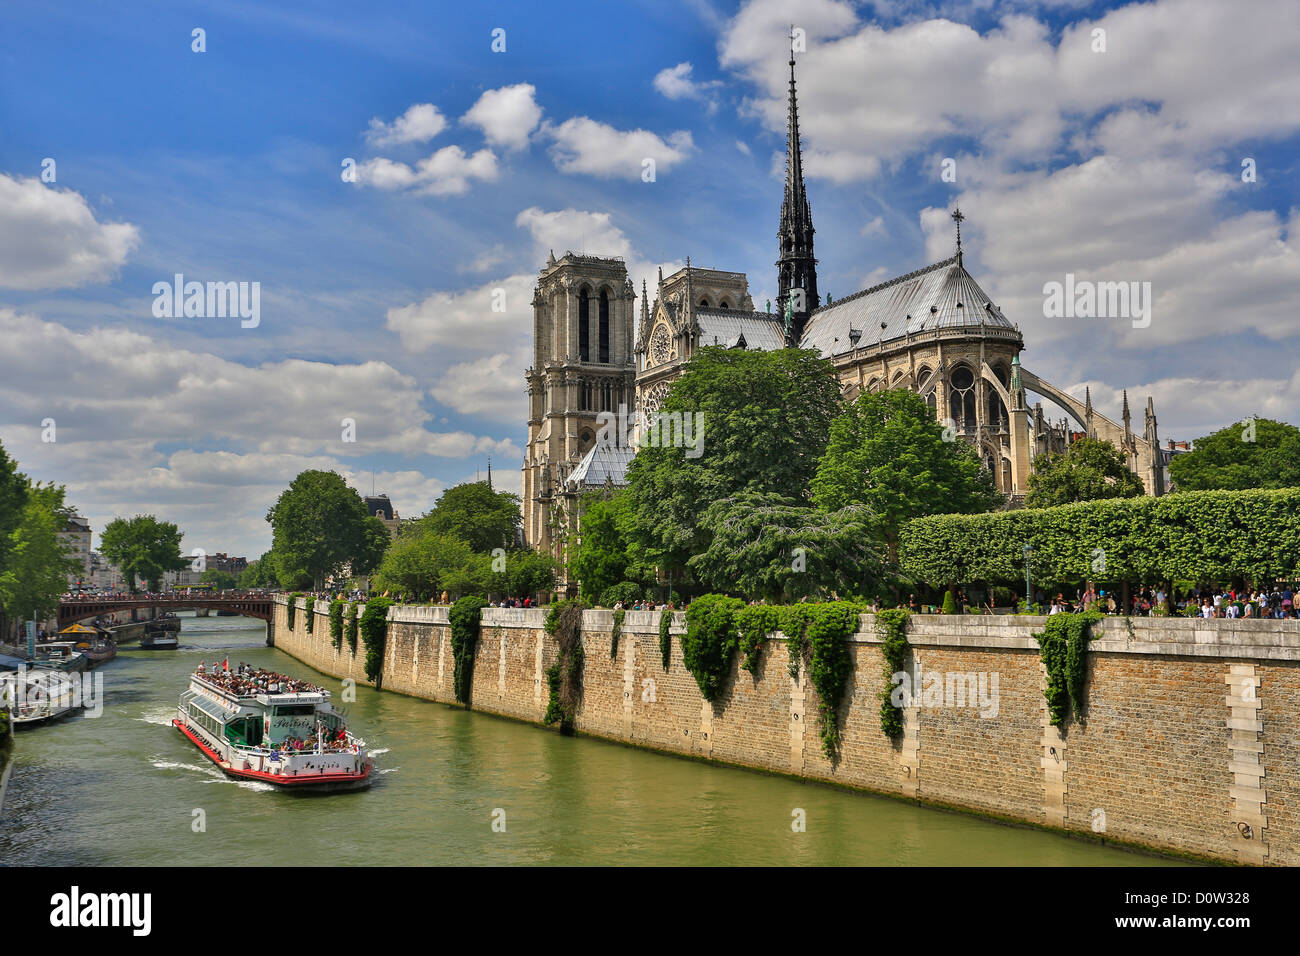 Francia, Europa, viajes, París, la ciudad, la catedral de Notre Dame, la arquitectura, la catedral católica, gótica, la historia, el barco, el horizonte, turismo, une Foto de stock